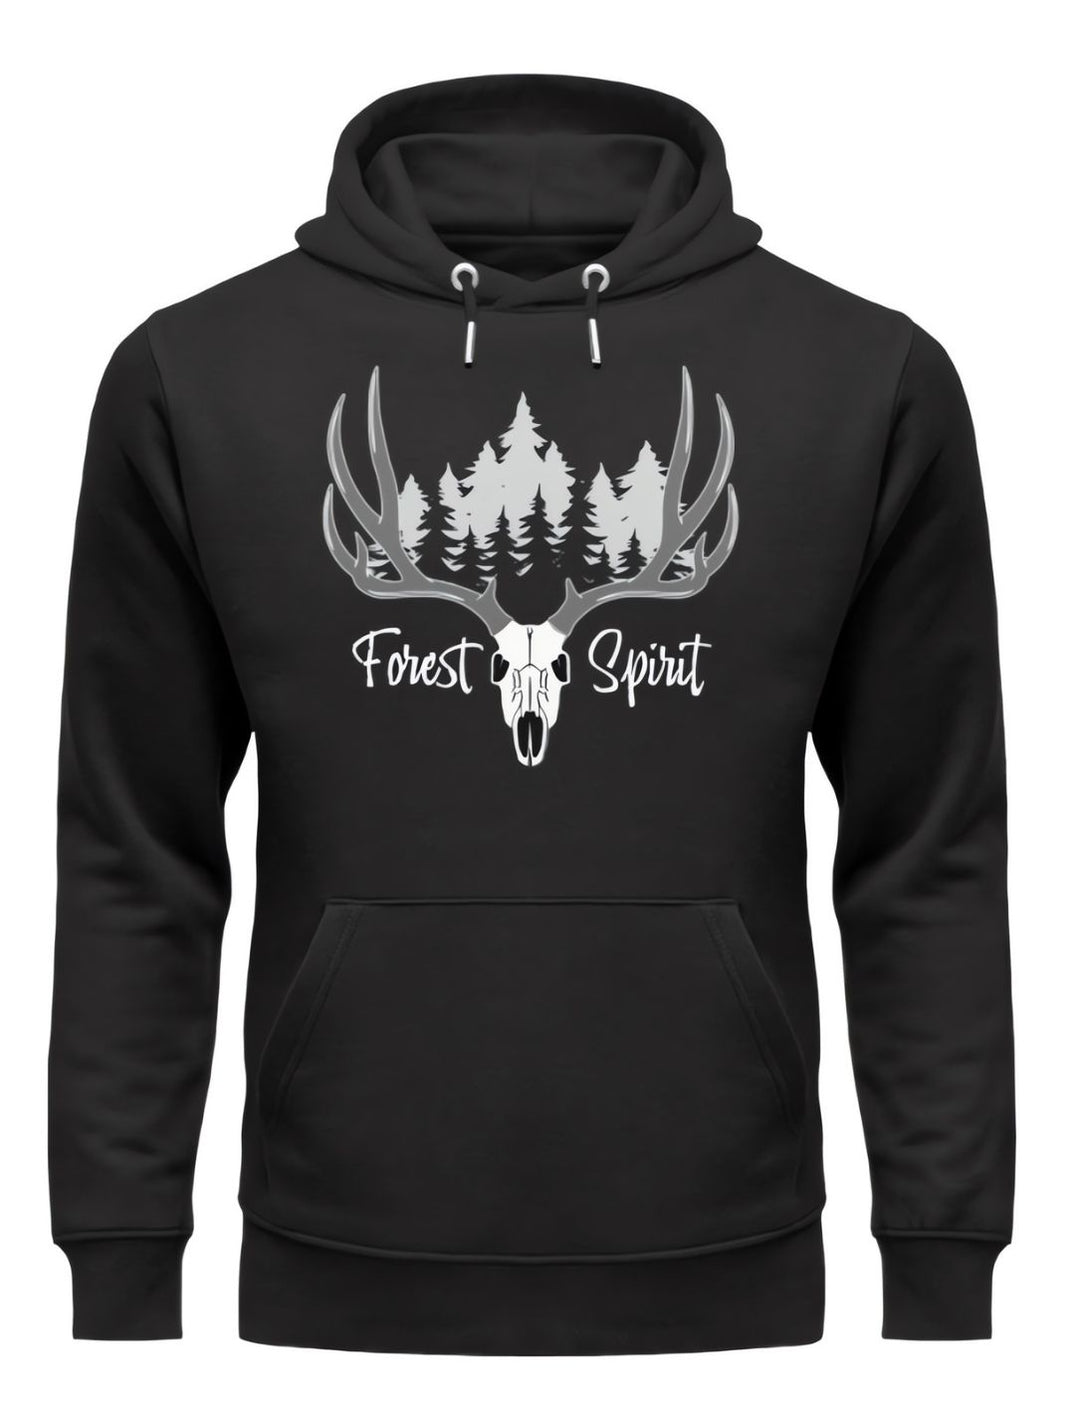 Forest Spirit Premium Unisex Hoodie mit mystischem Hirsch-Design, inspiriert von der keltischen Mythologie, in schwarz, von Runental.de